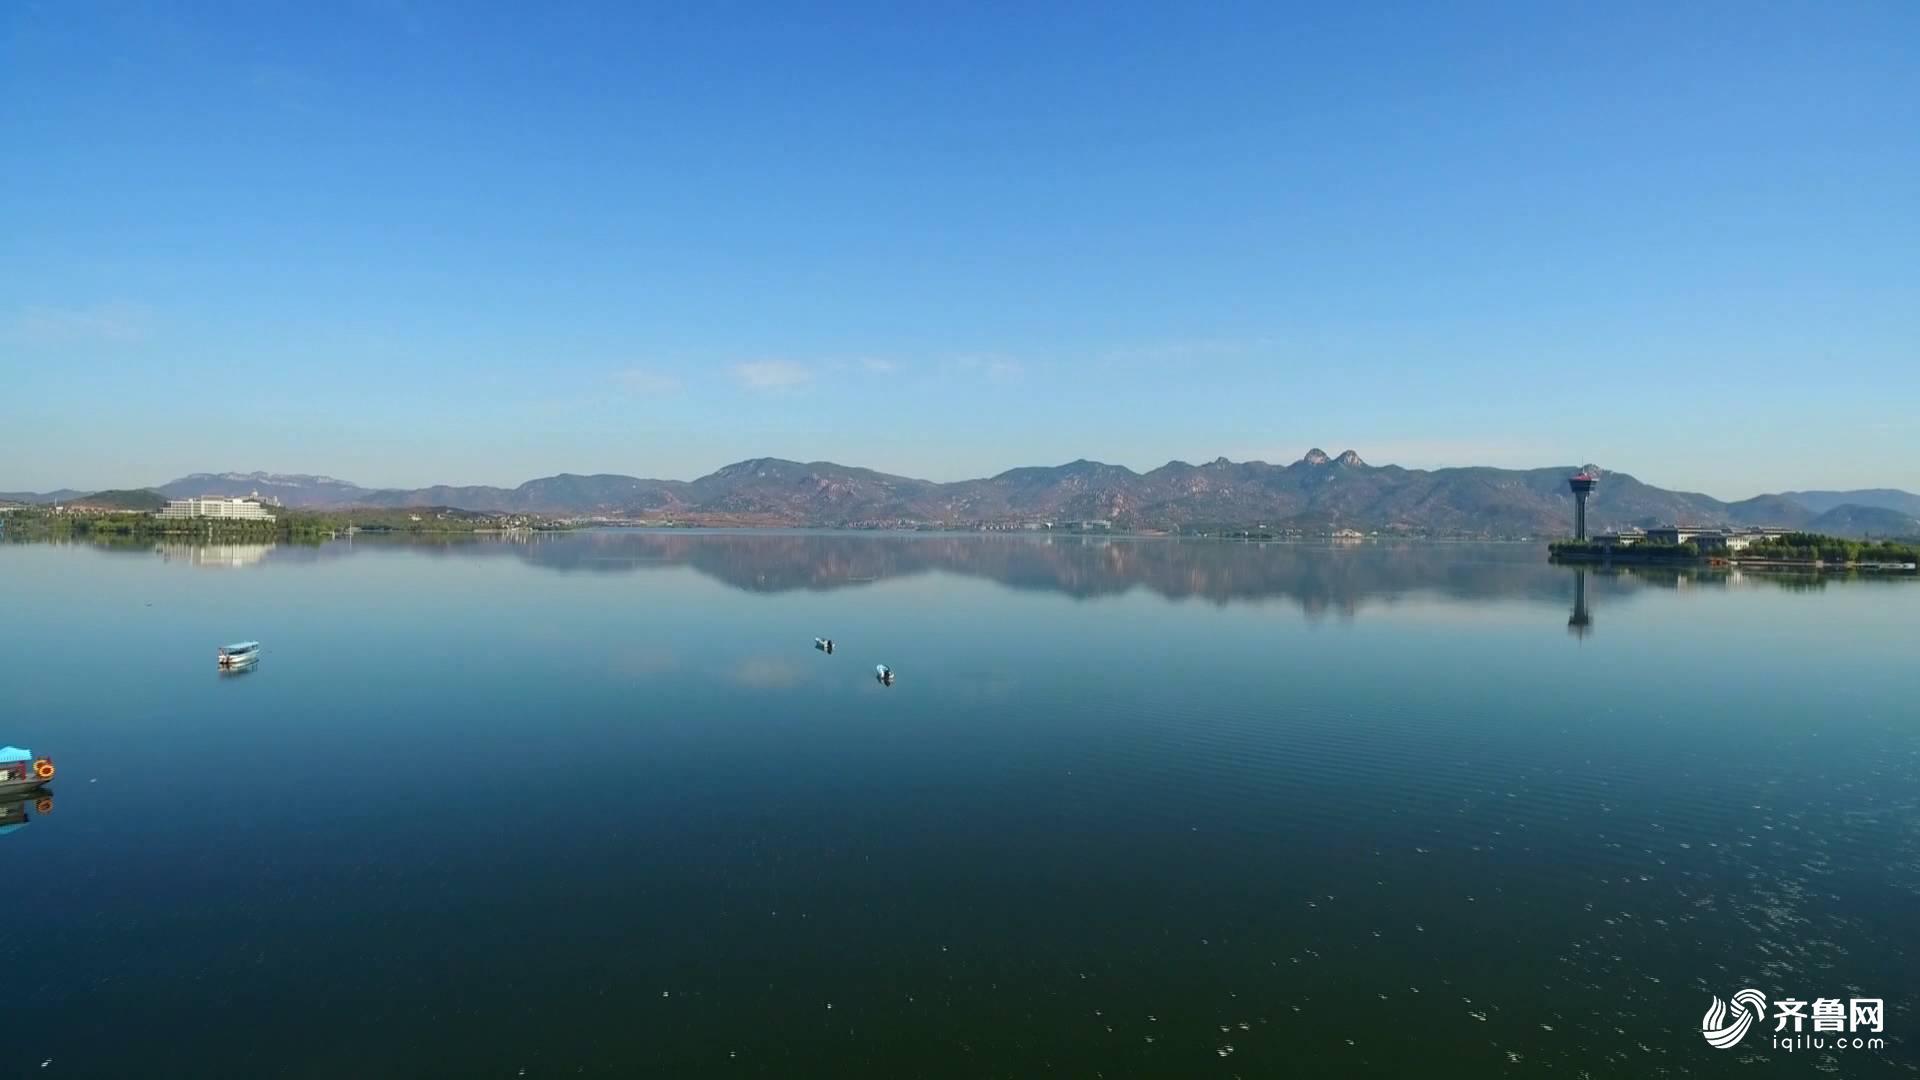 【携程攻略】济南雪野湖景点,雪野湖，即雪野水库，是济南市50公里圈内最大的水面。原属于山东省最…